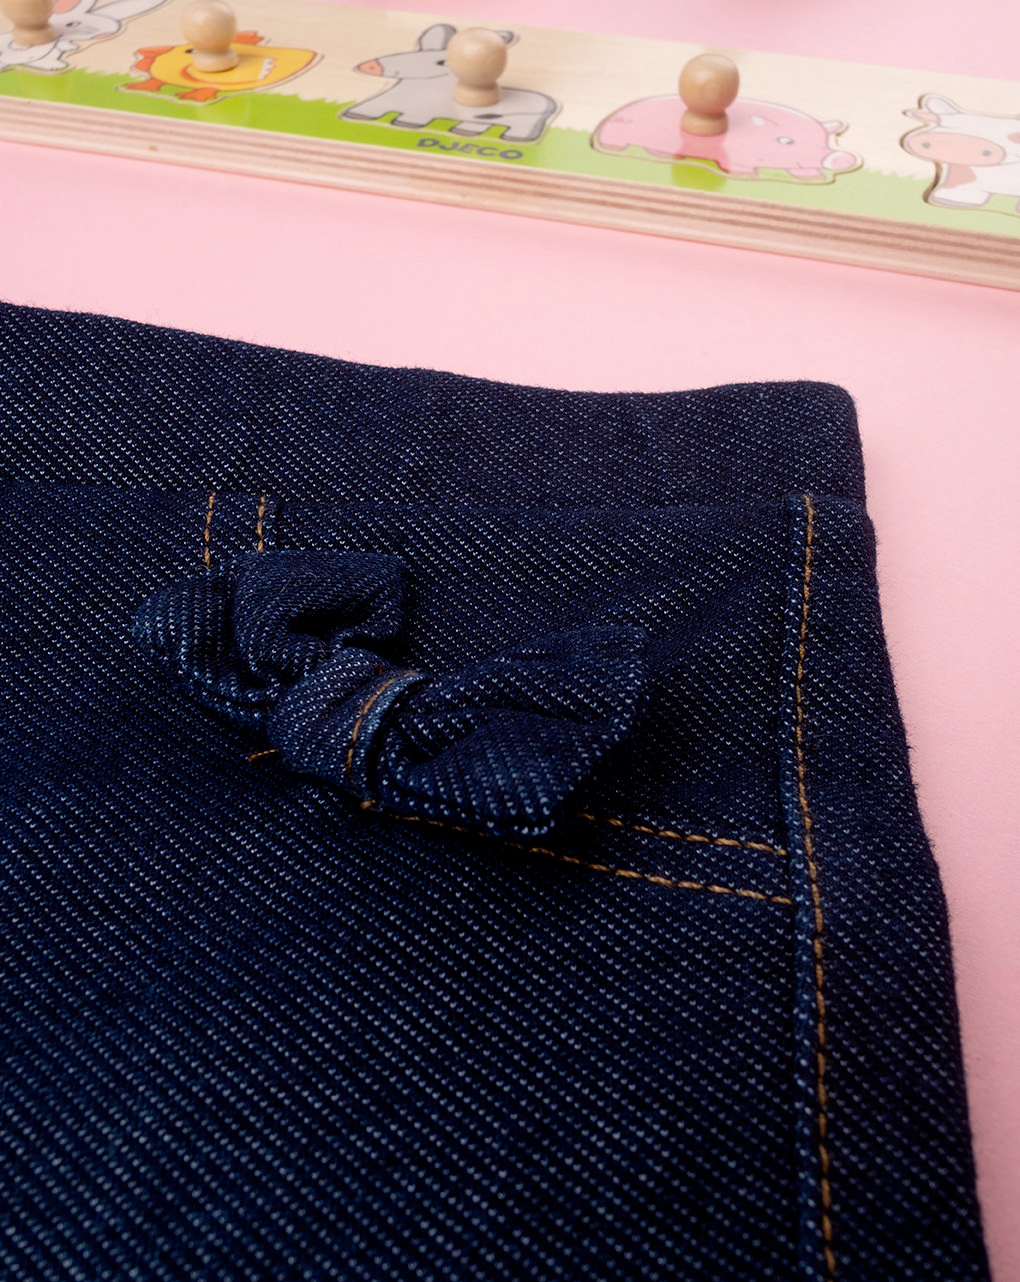 βρεφικό τζιν παντελόνι σκούρο μπλε με φιογκάκια για κορίτσι - Prénatal